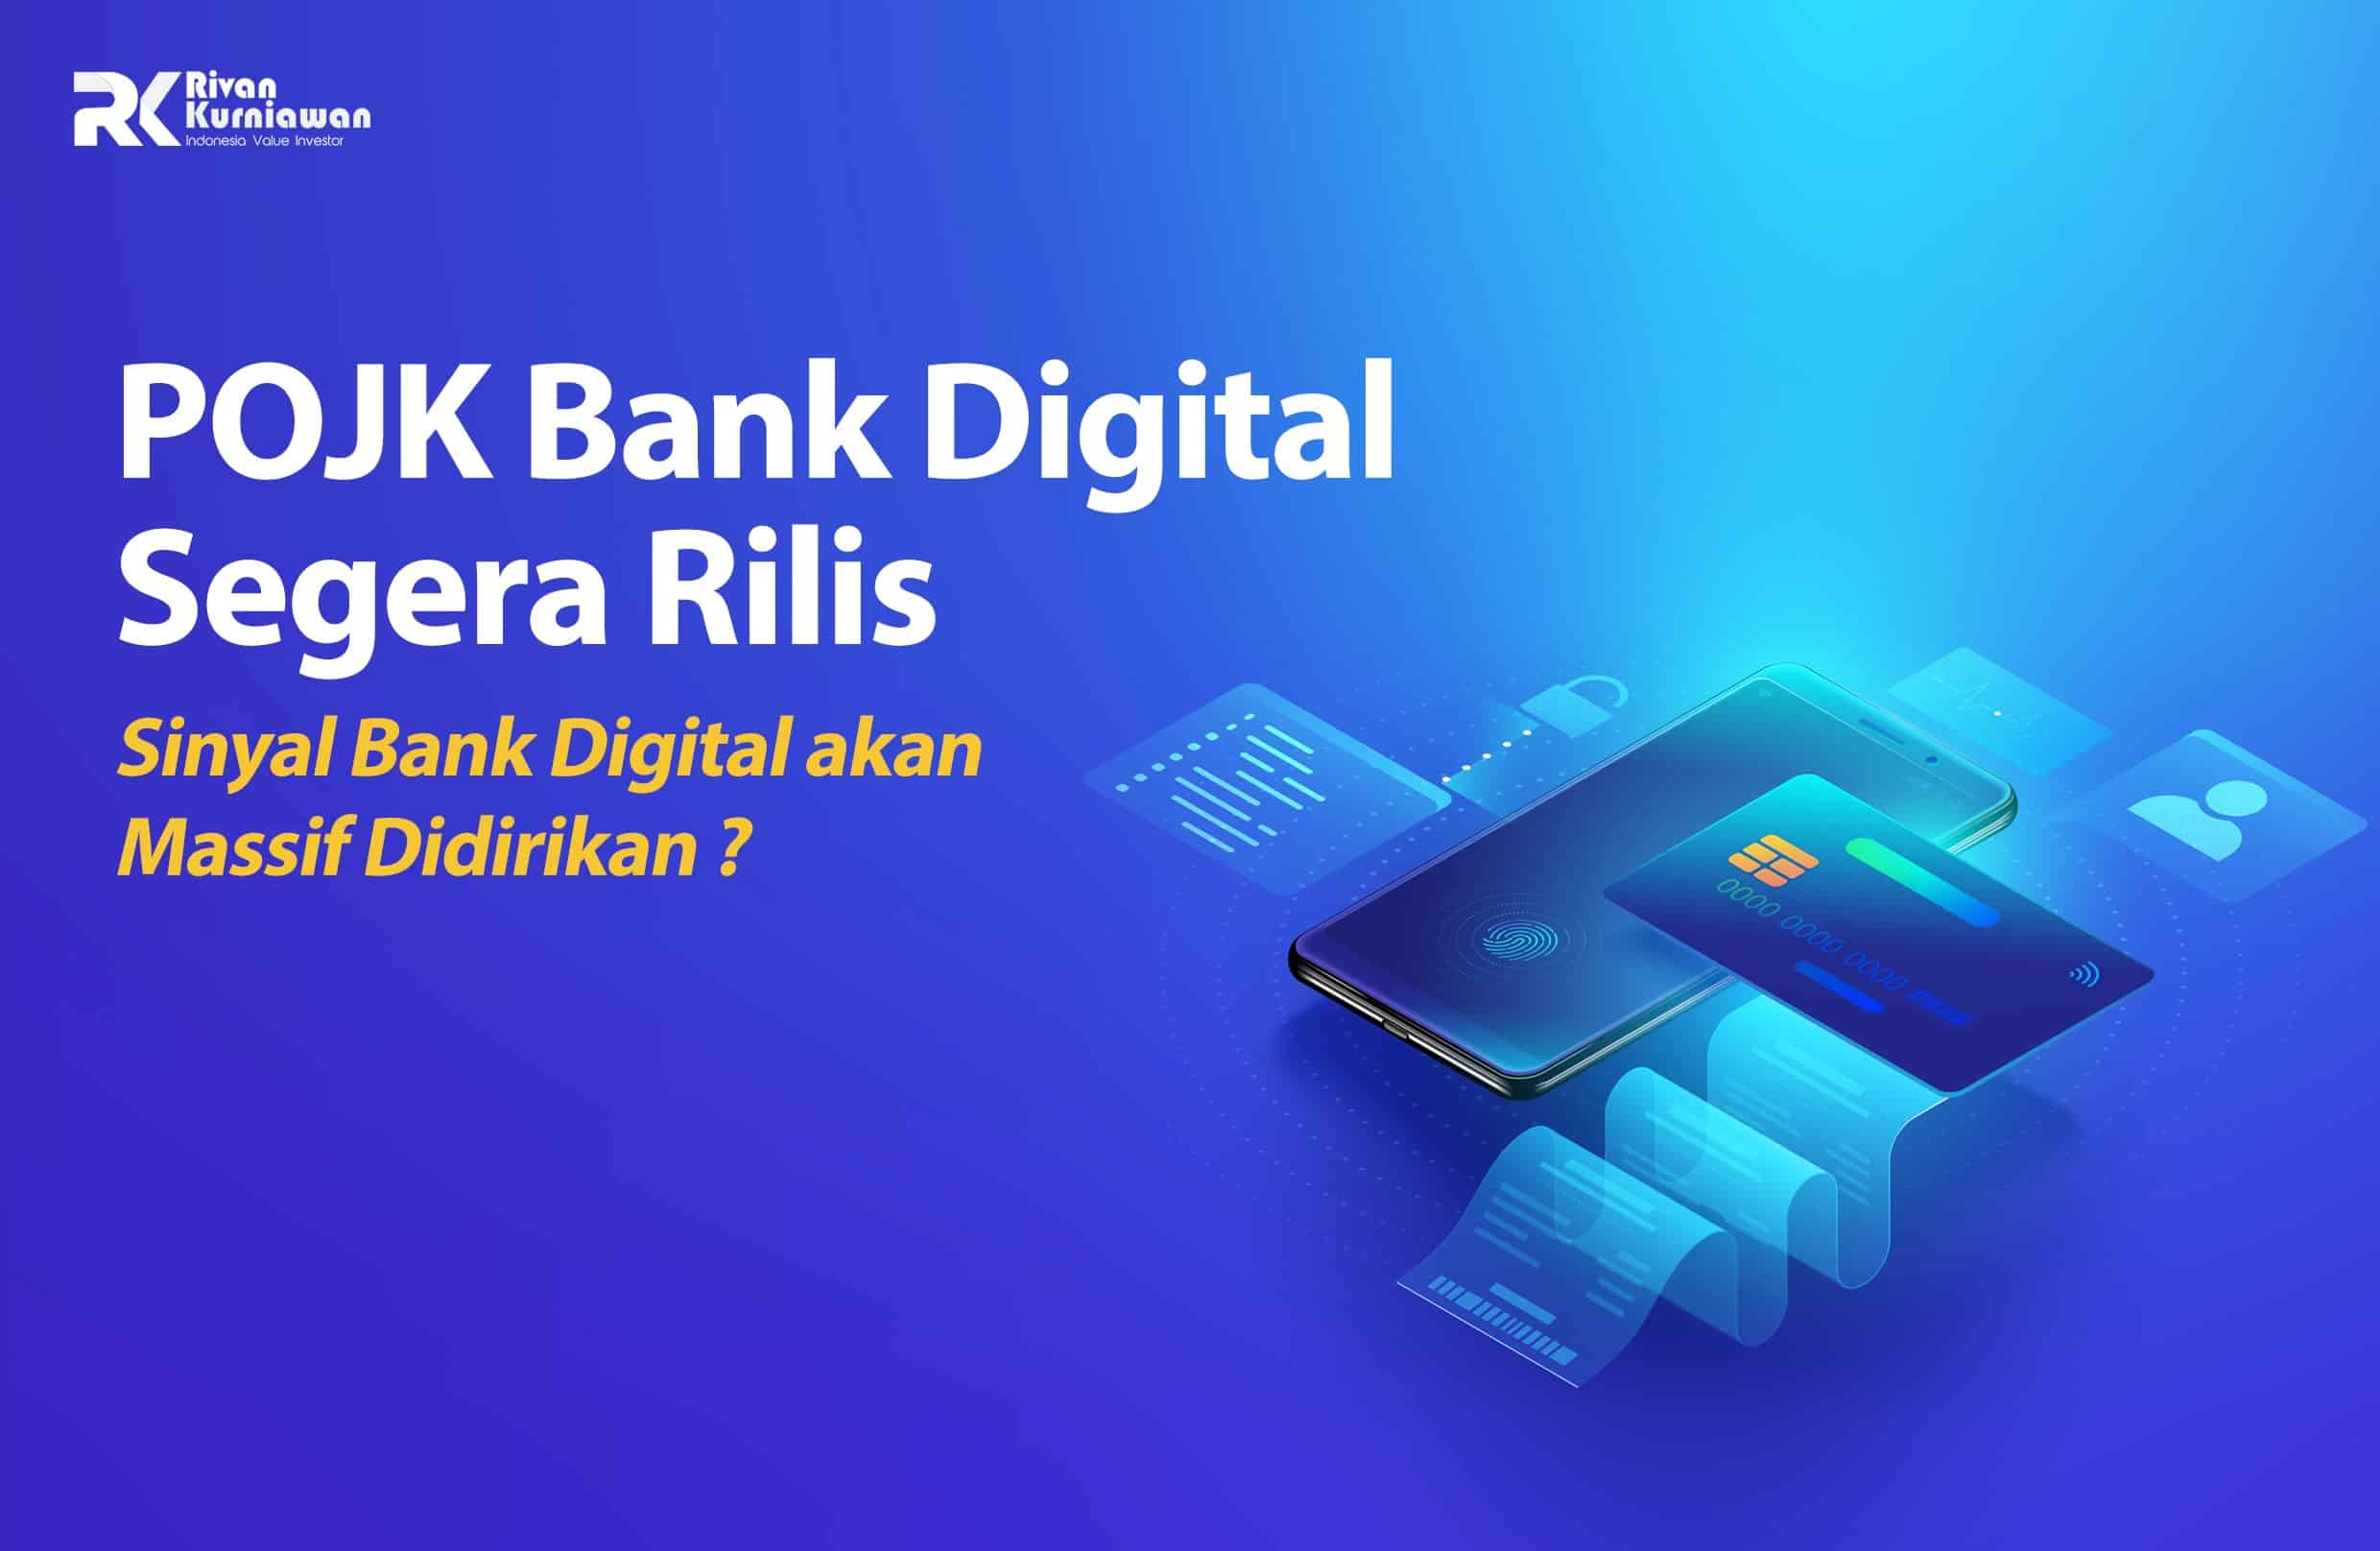 POJK Bank Digital